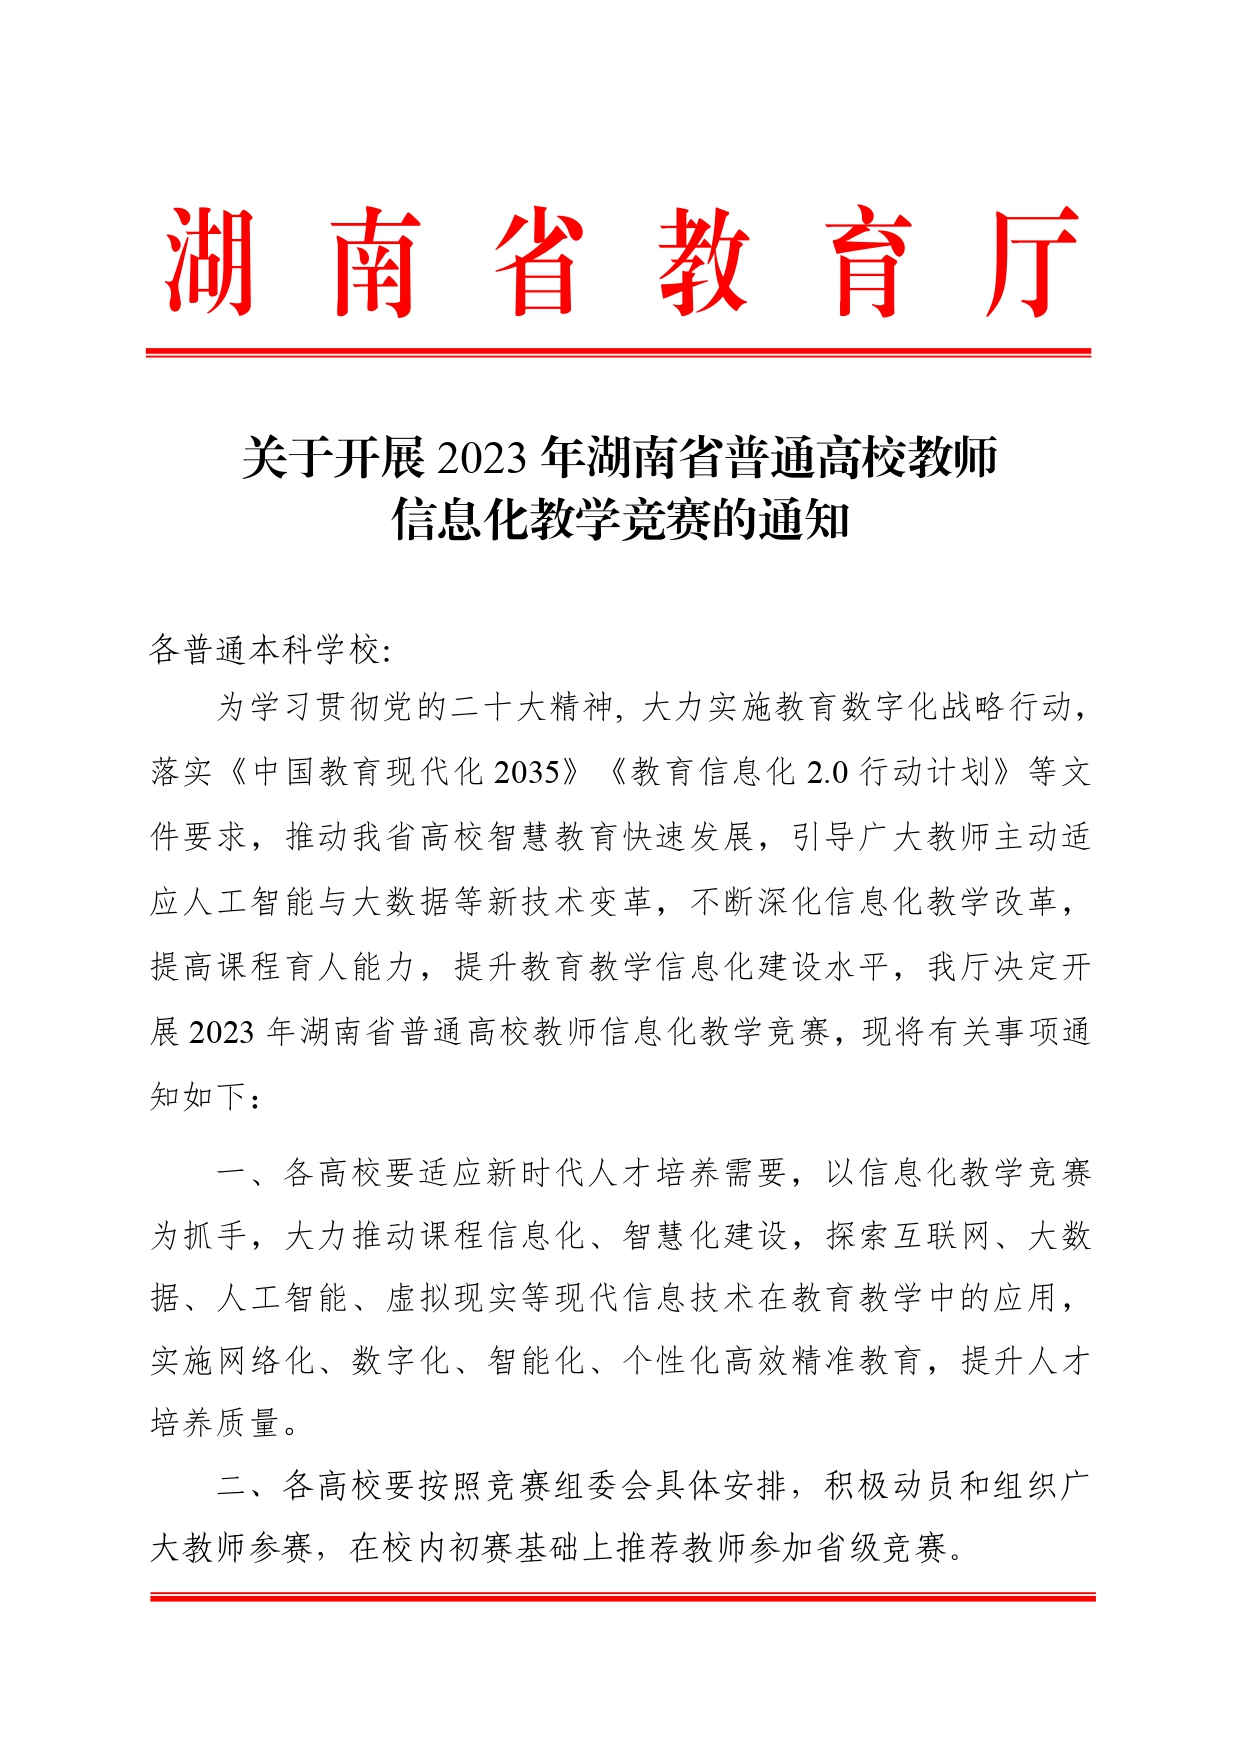 关于开展2023年湖南省普通高校教师信息化教学竞赛的通知正文(1)_page-0001.jpg